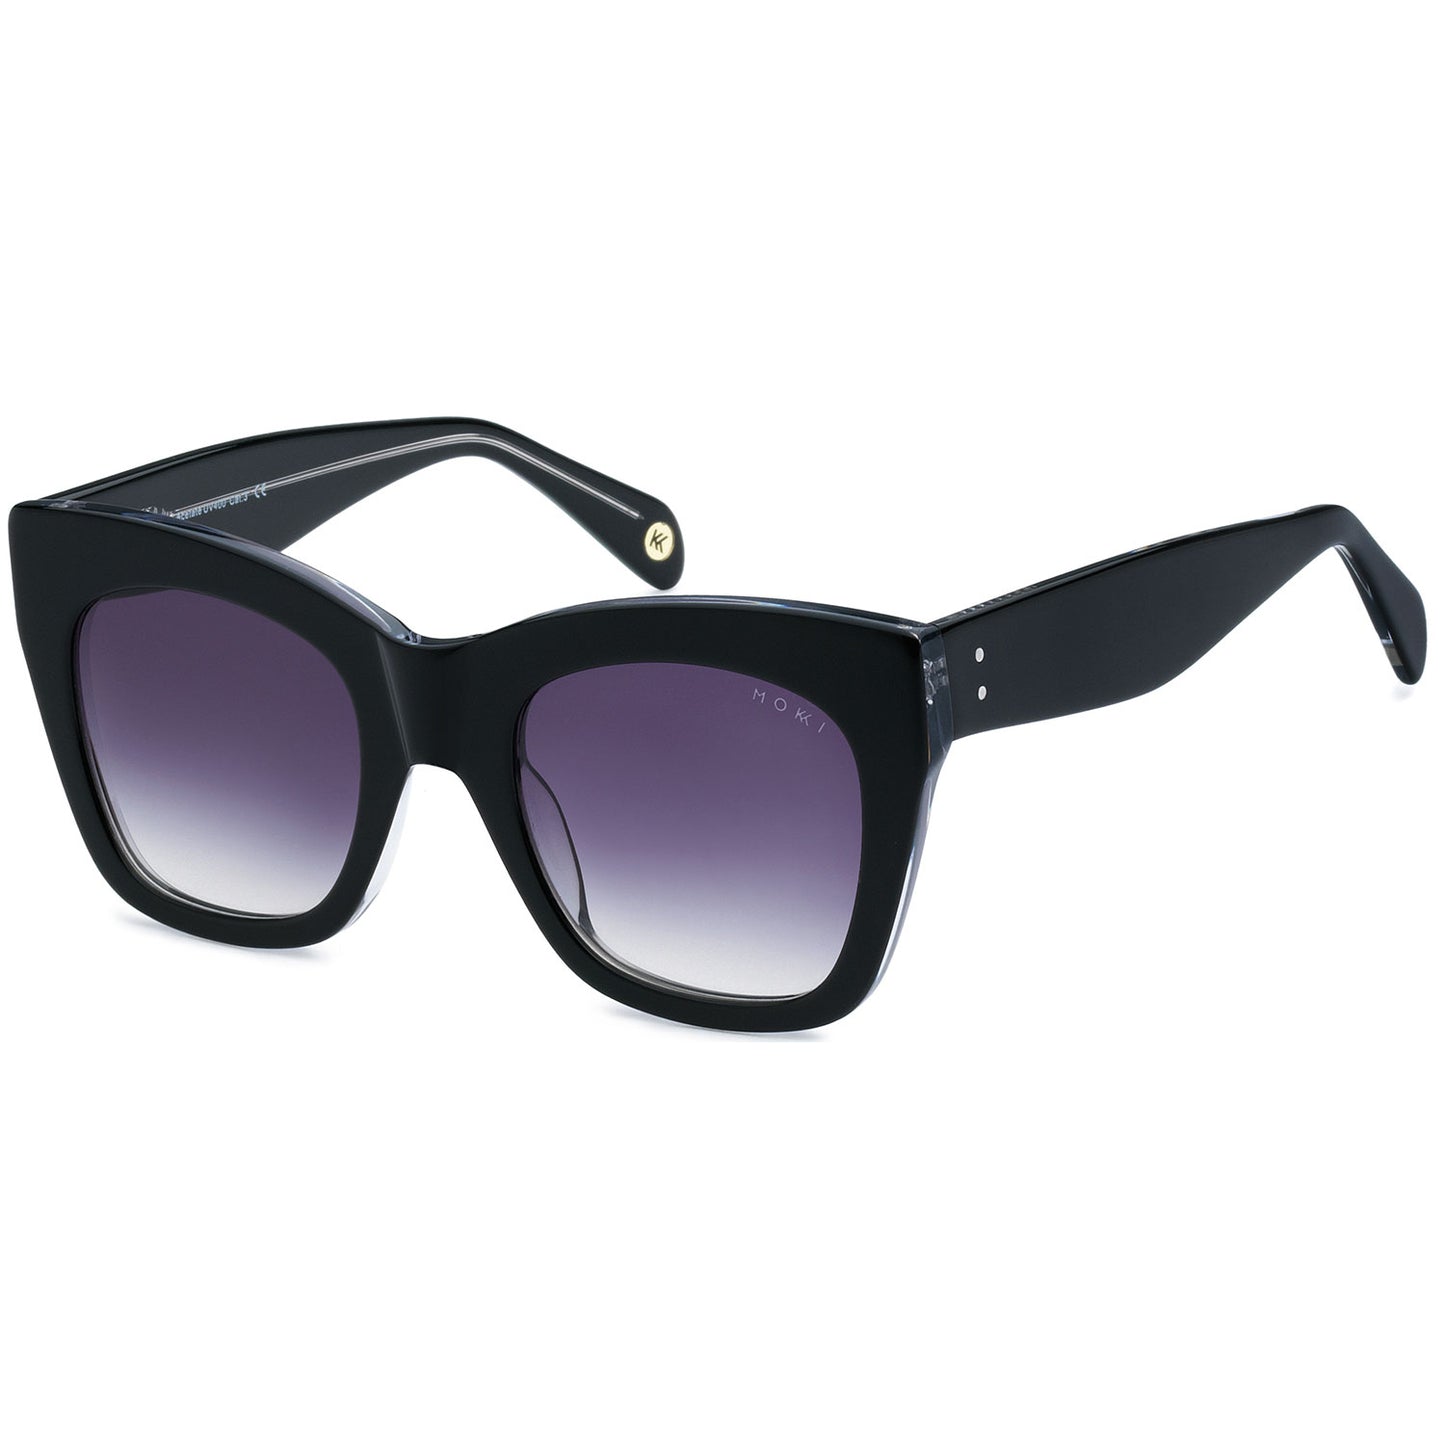 Mokki Confident Diva sunglasses for women in black